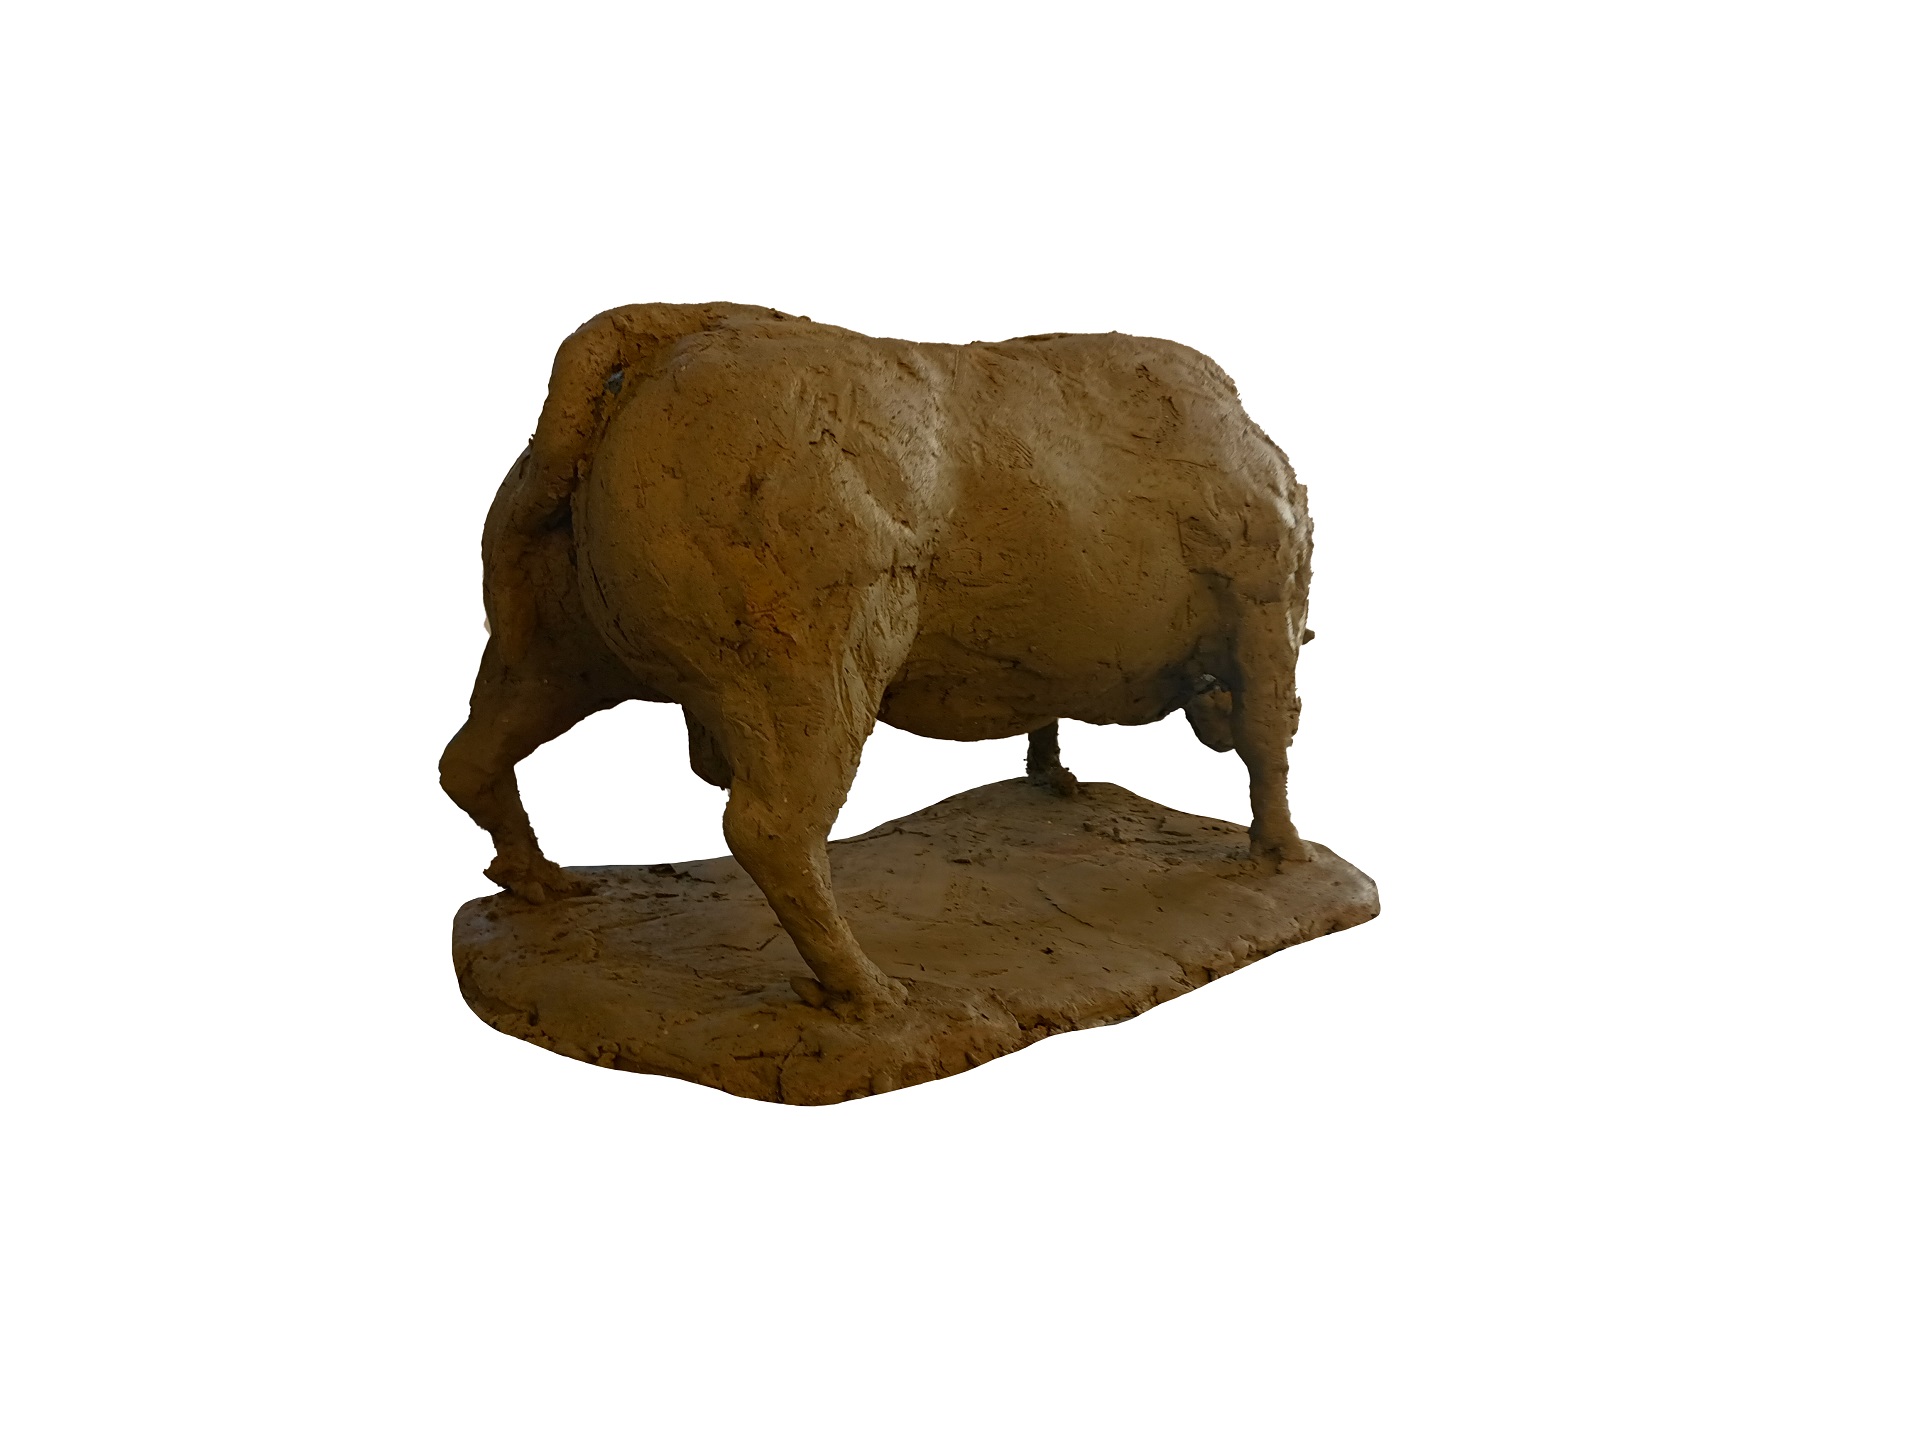 zdjęcie przedstawia rzeźbę byka umieszczoną na podstawie, wykonaną w glinie. Rzeźba prezentowana na białym tle